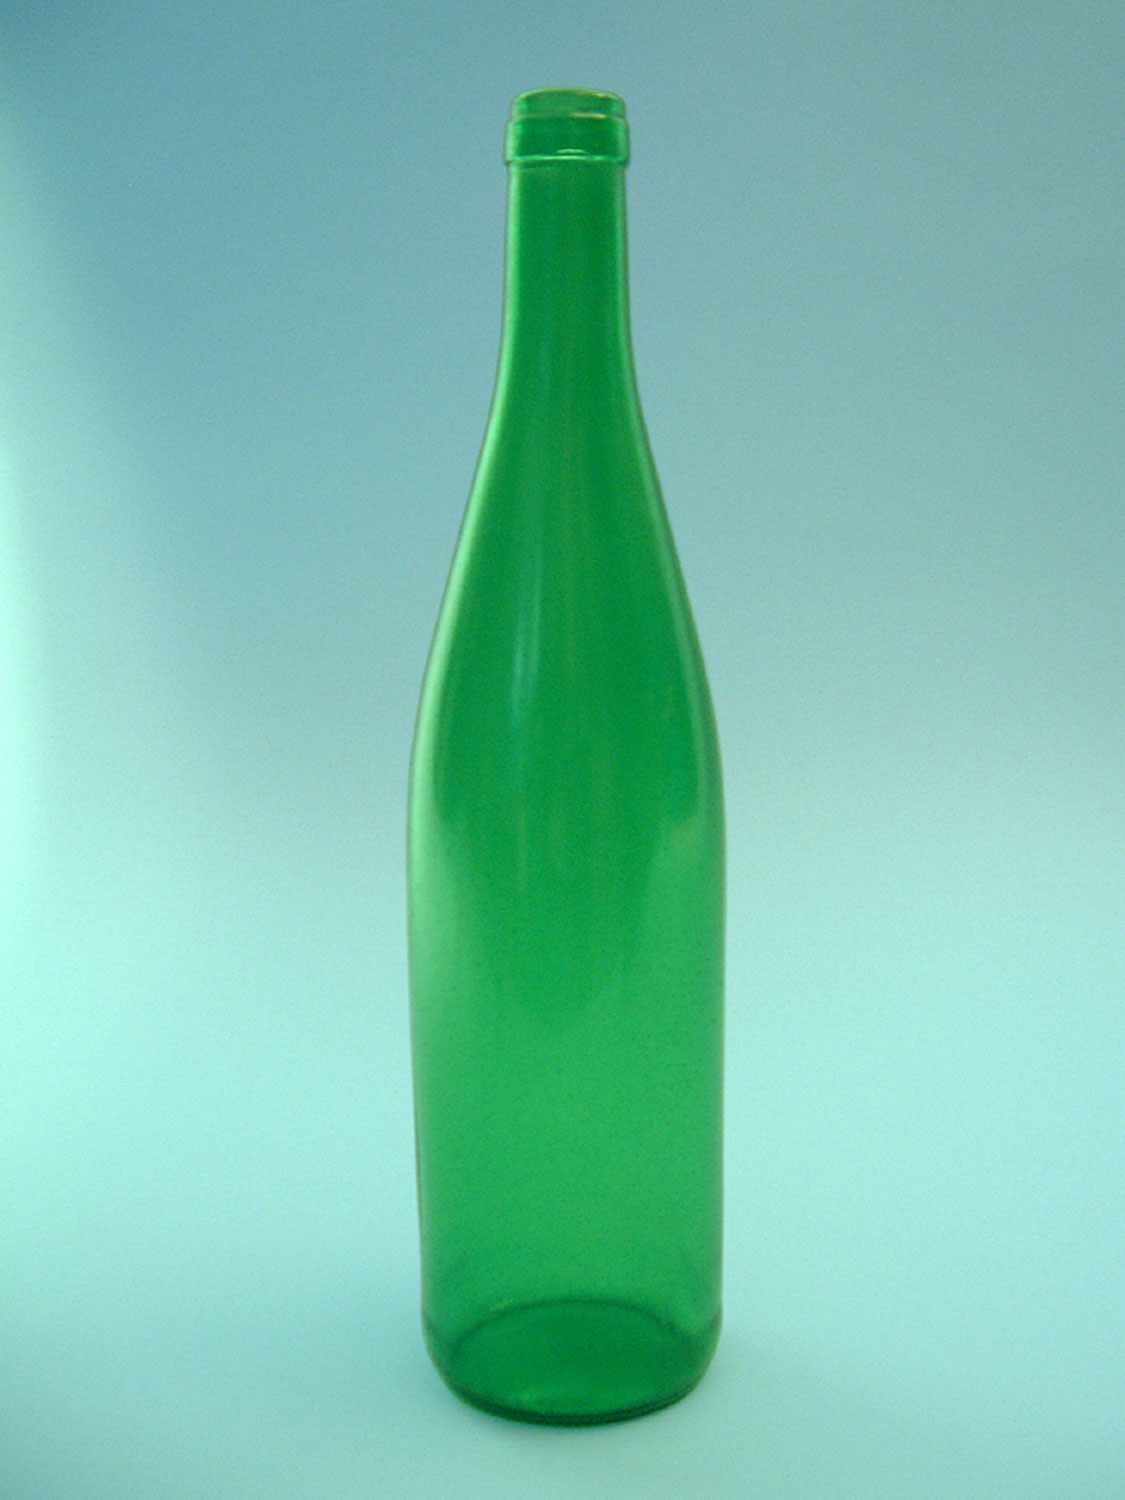 Wijnfles groen, 07 liter. Afmeting 31 x ø 7,5 cm.